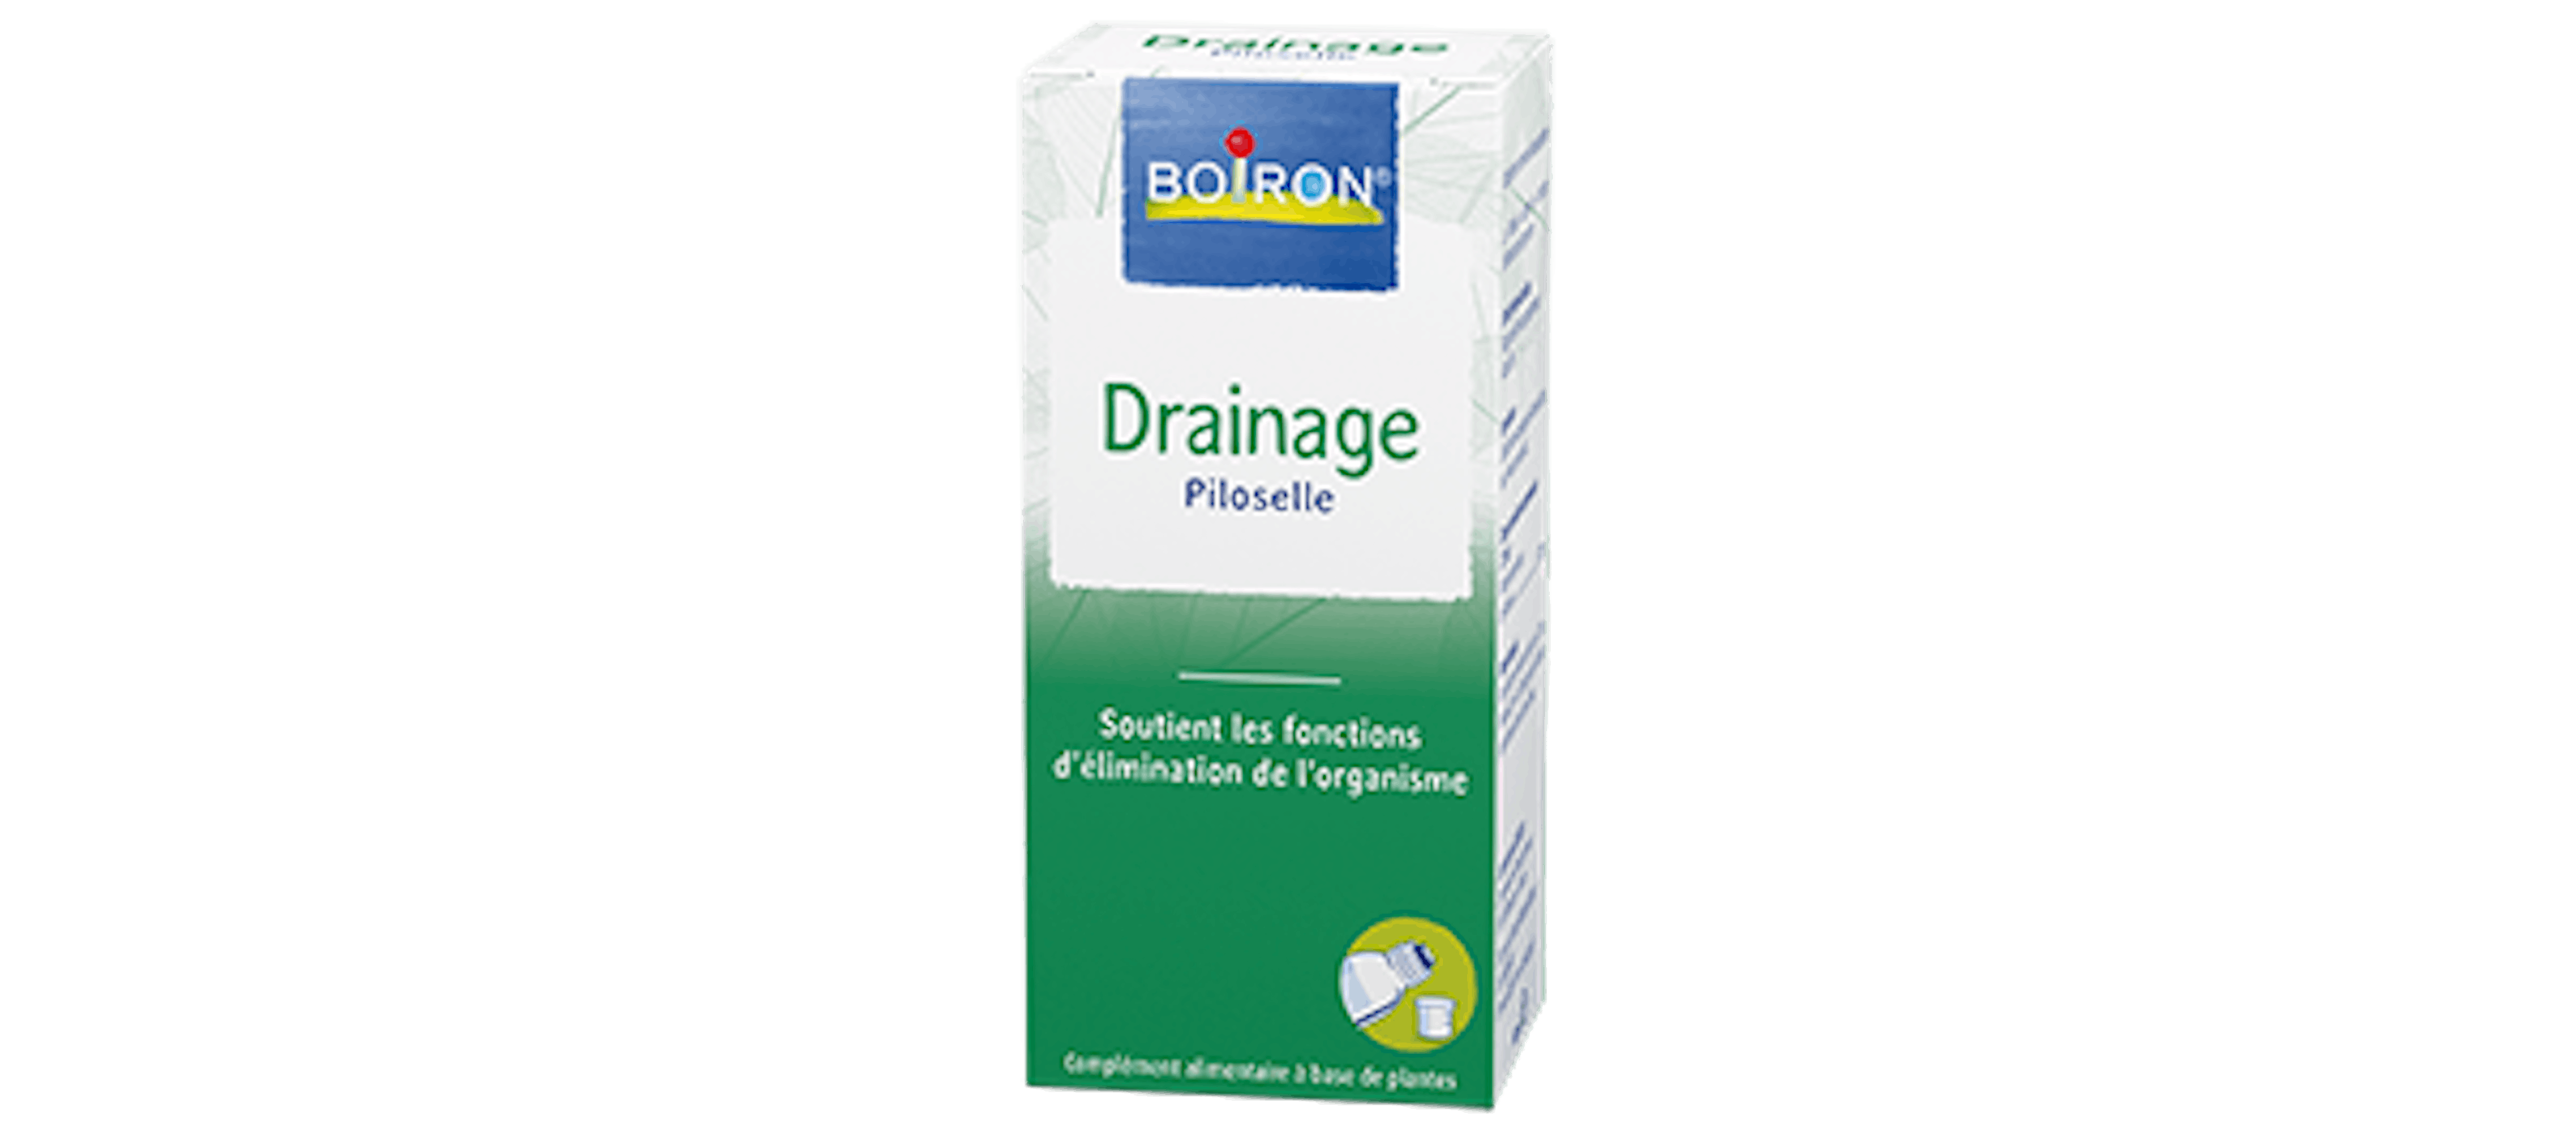 Piloselle - Aide à soutenir les fonctions de drainage - Les extraits de plantes Boiron